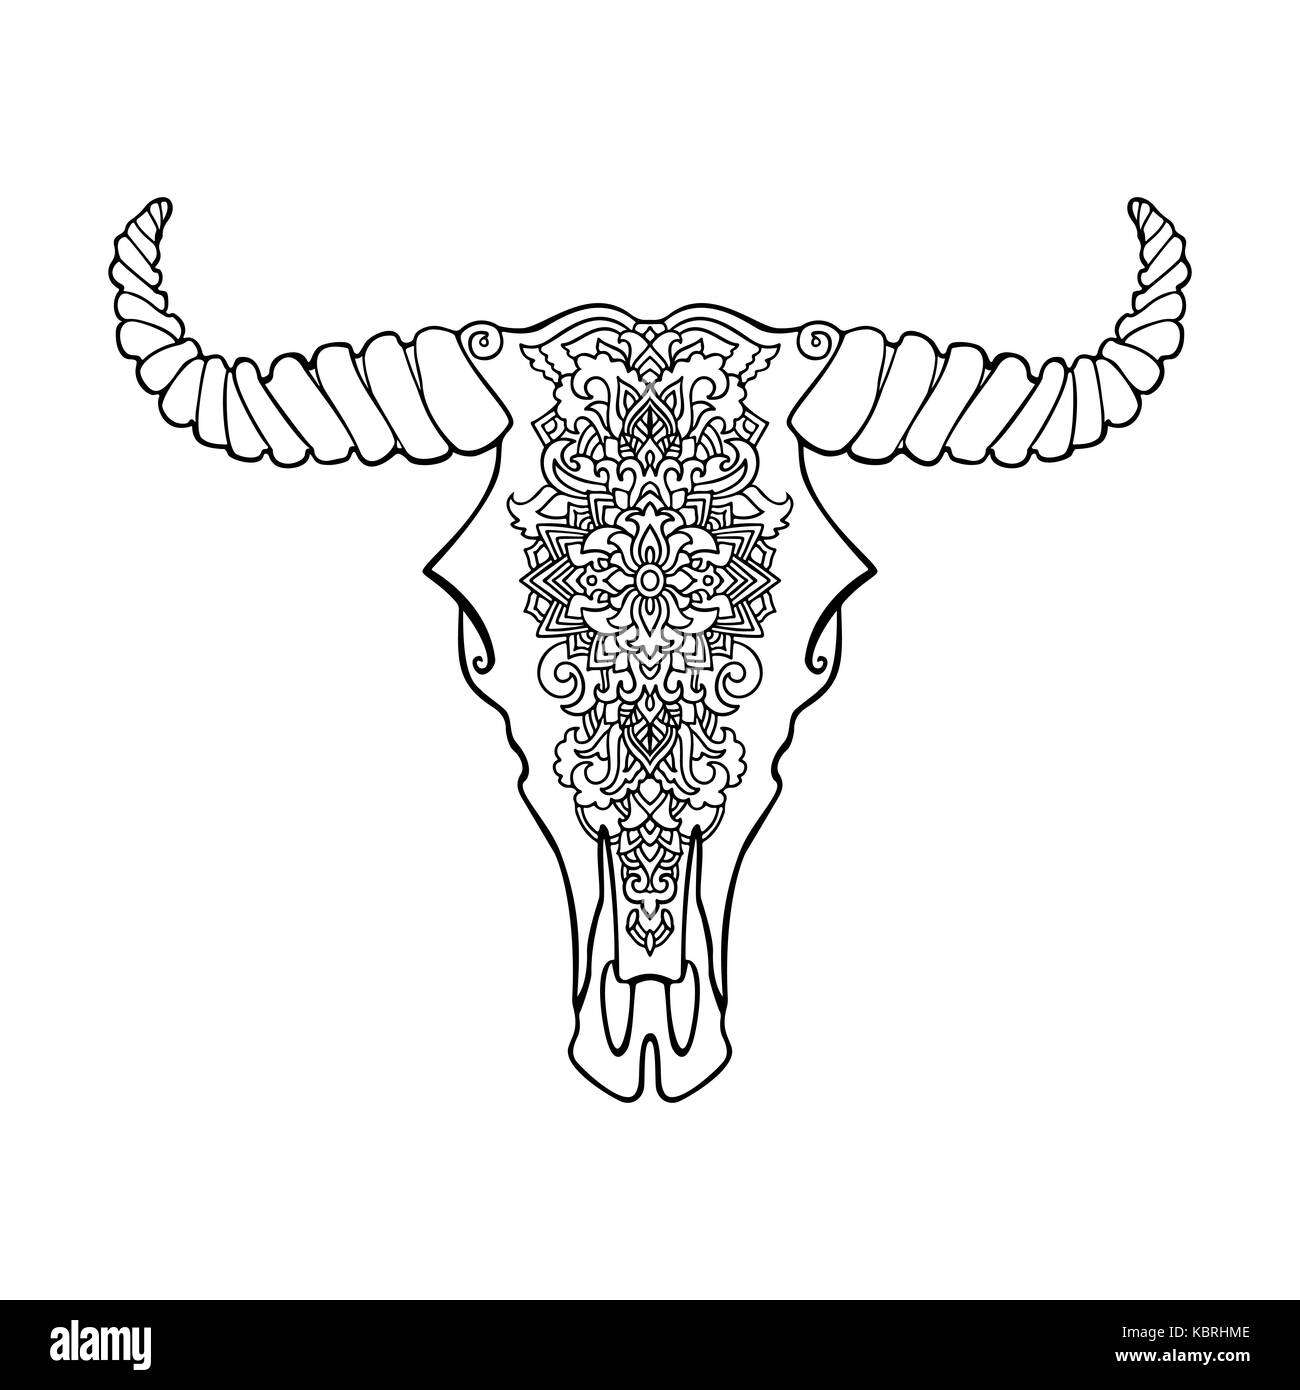 Style tatouage mandala dead cow head ornement décoratif. crâne de buffle. Native Art indien illustration noir et blanc. croquis ethniques tribal style Boho. design pattern. Banque D'Images